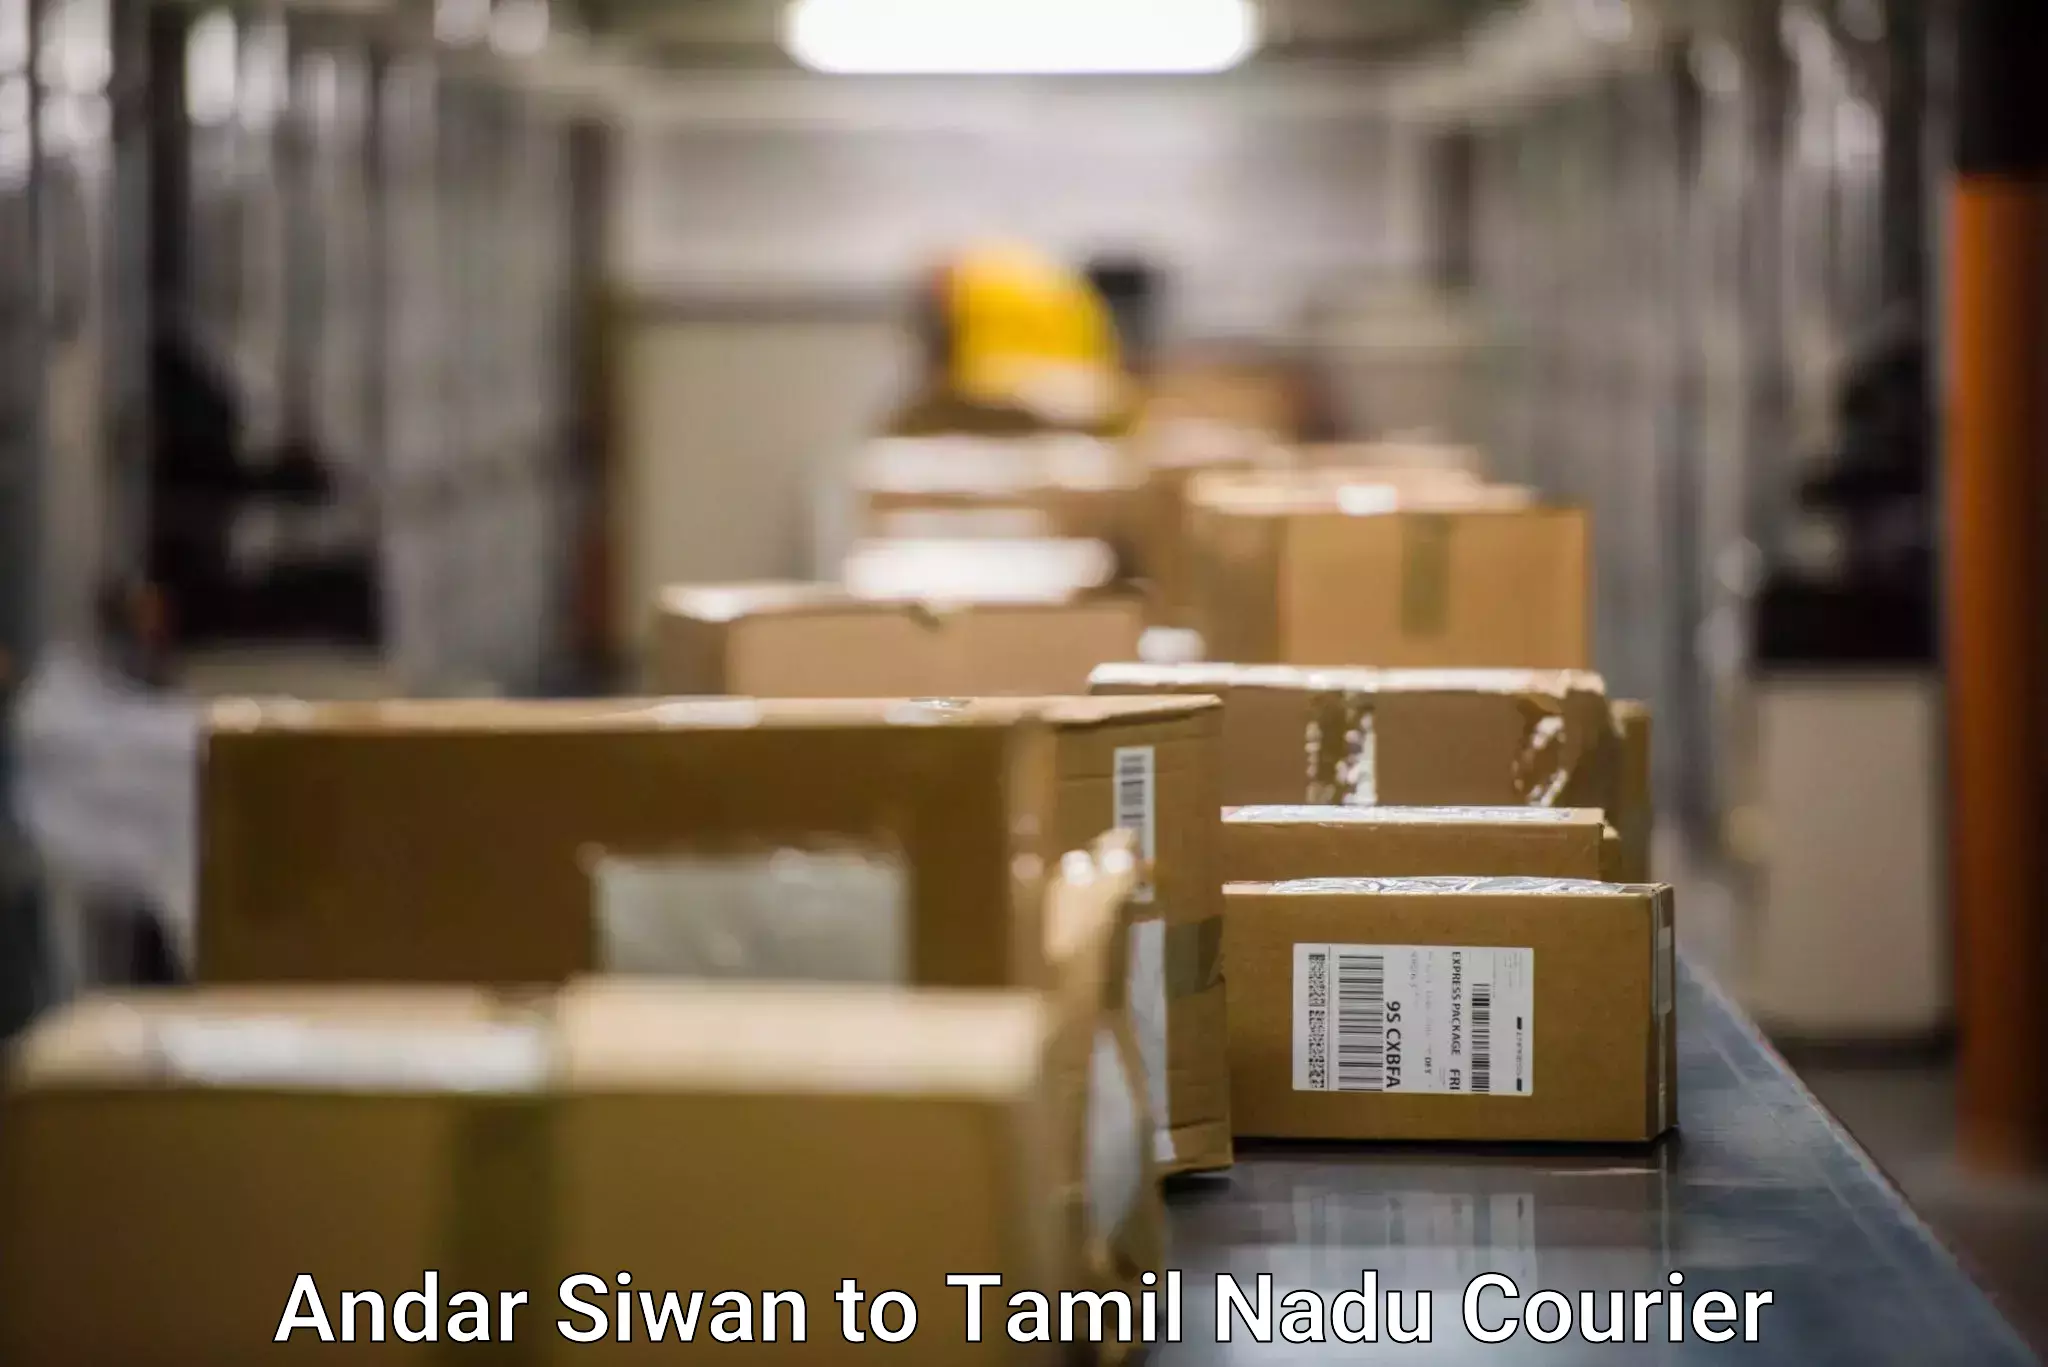 Custom courier packaging Andar Siwan to Tamil Nadu